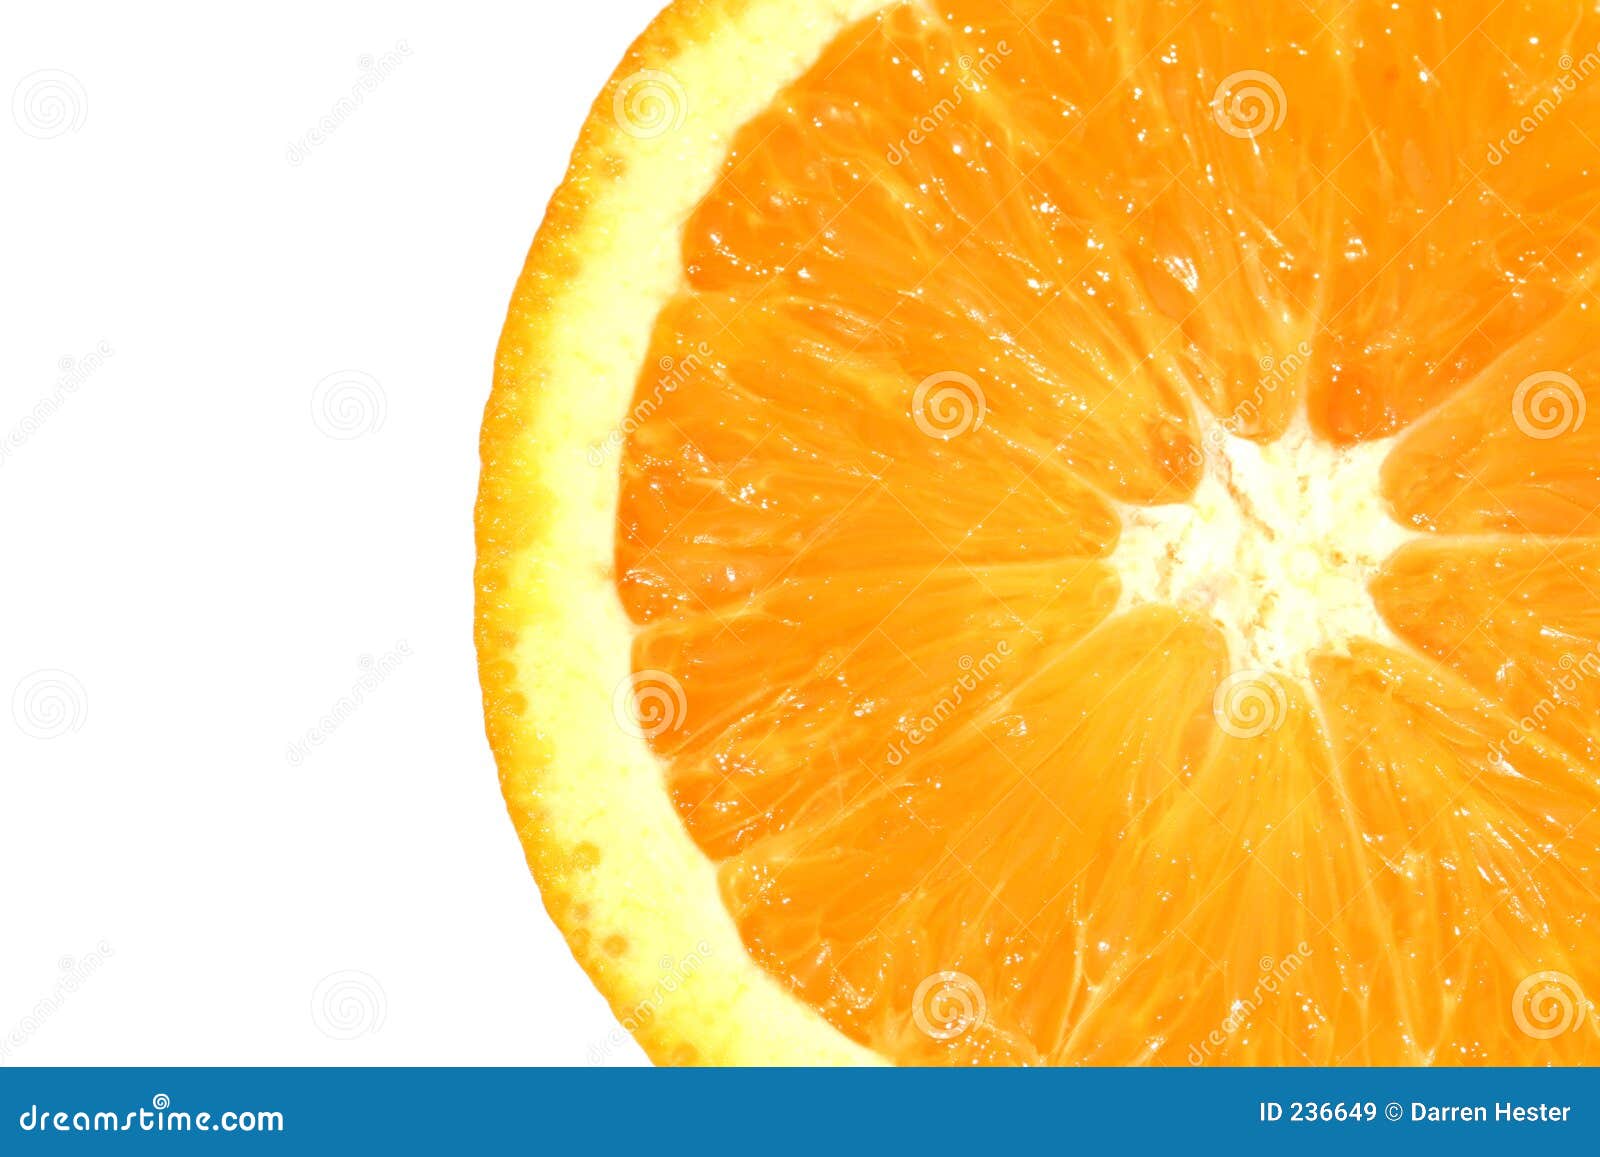 Orange Slice Stock Image Image Of Keywords Fruit Food 236649